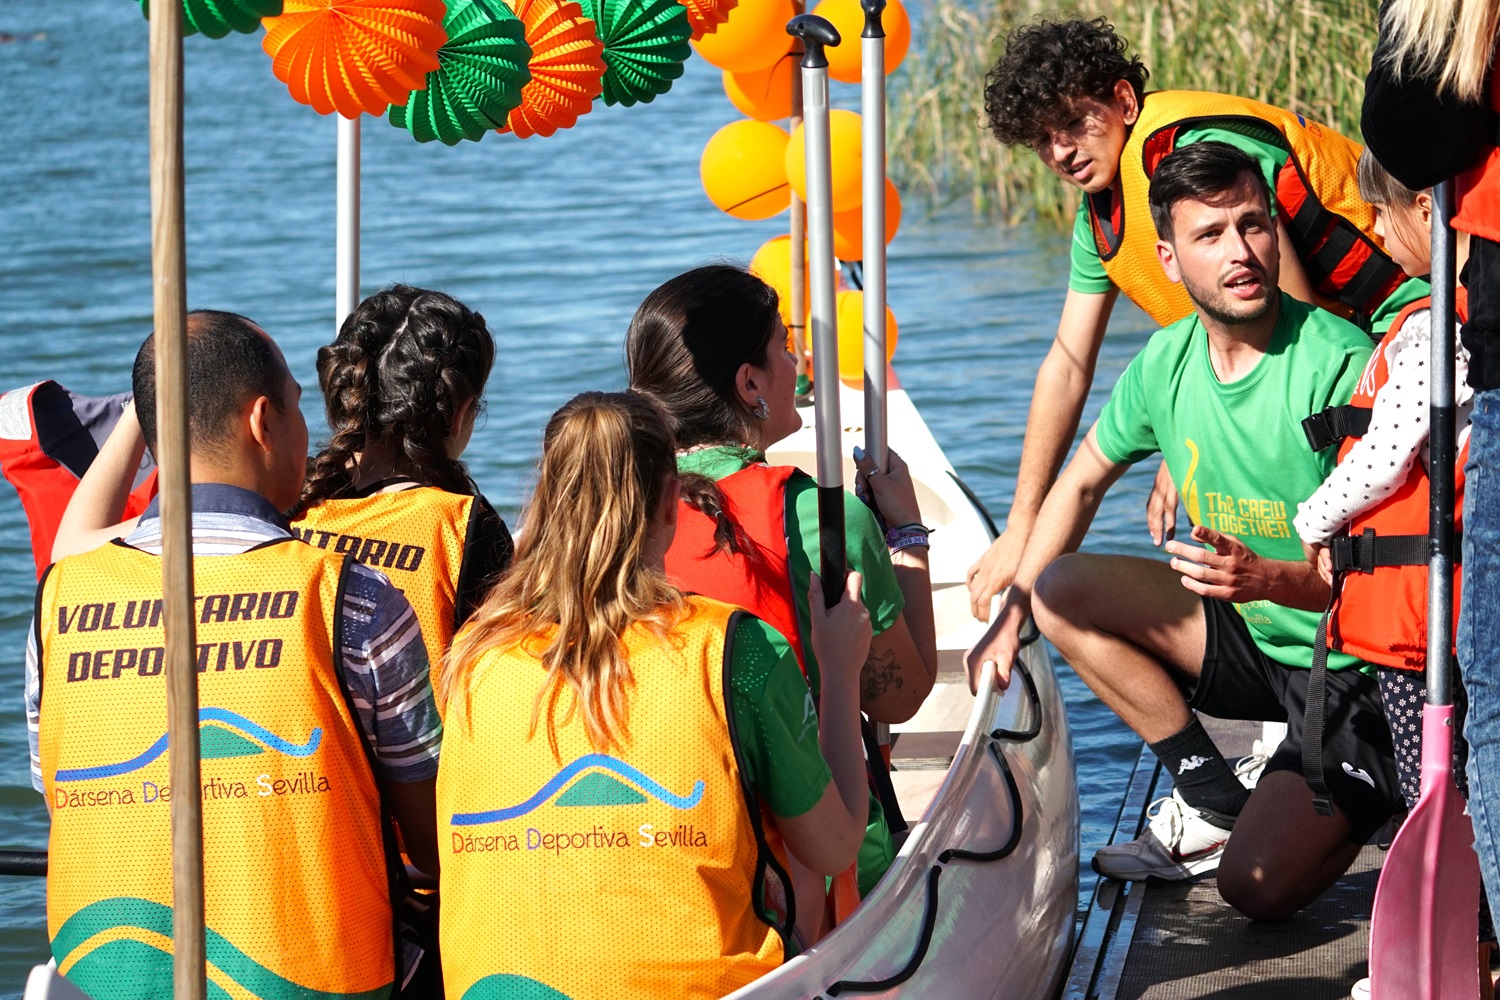 Andrés da indicaciones a la tripulación de la canoa, en la orilla del río, antes de dar comienzo a la actividad.